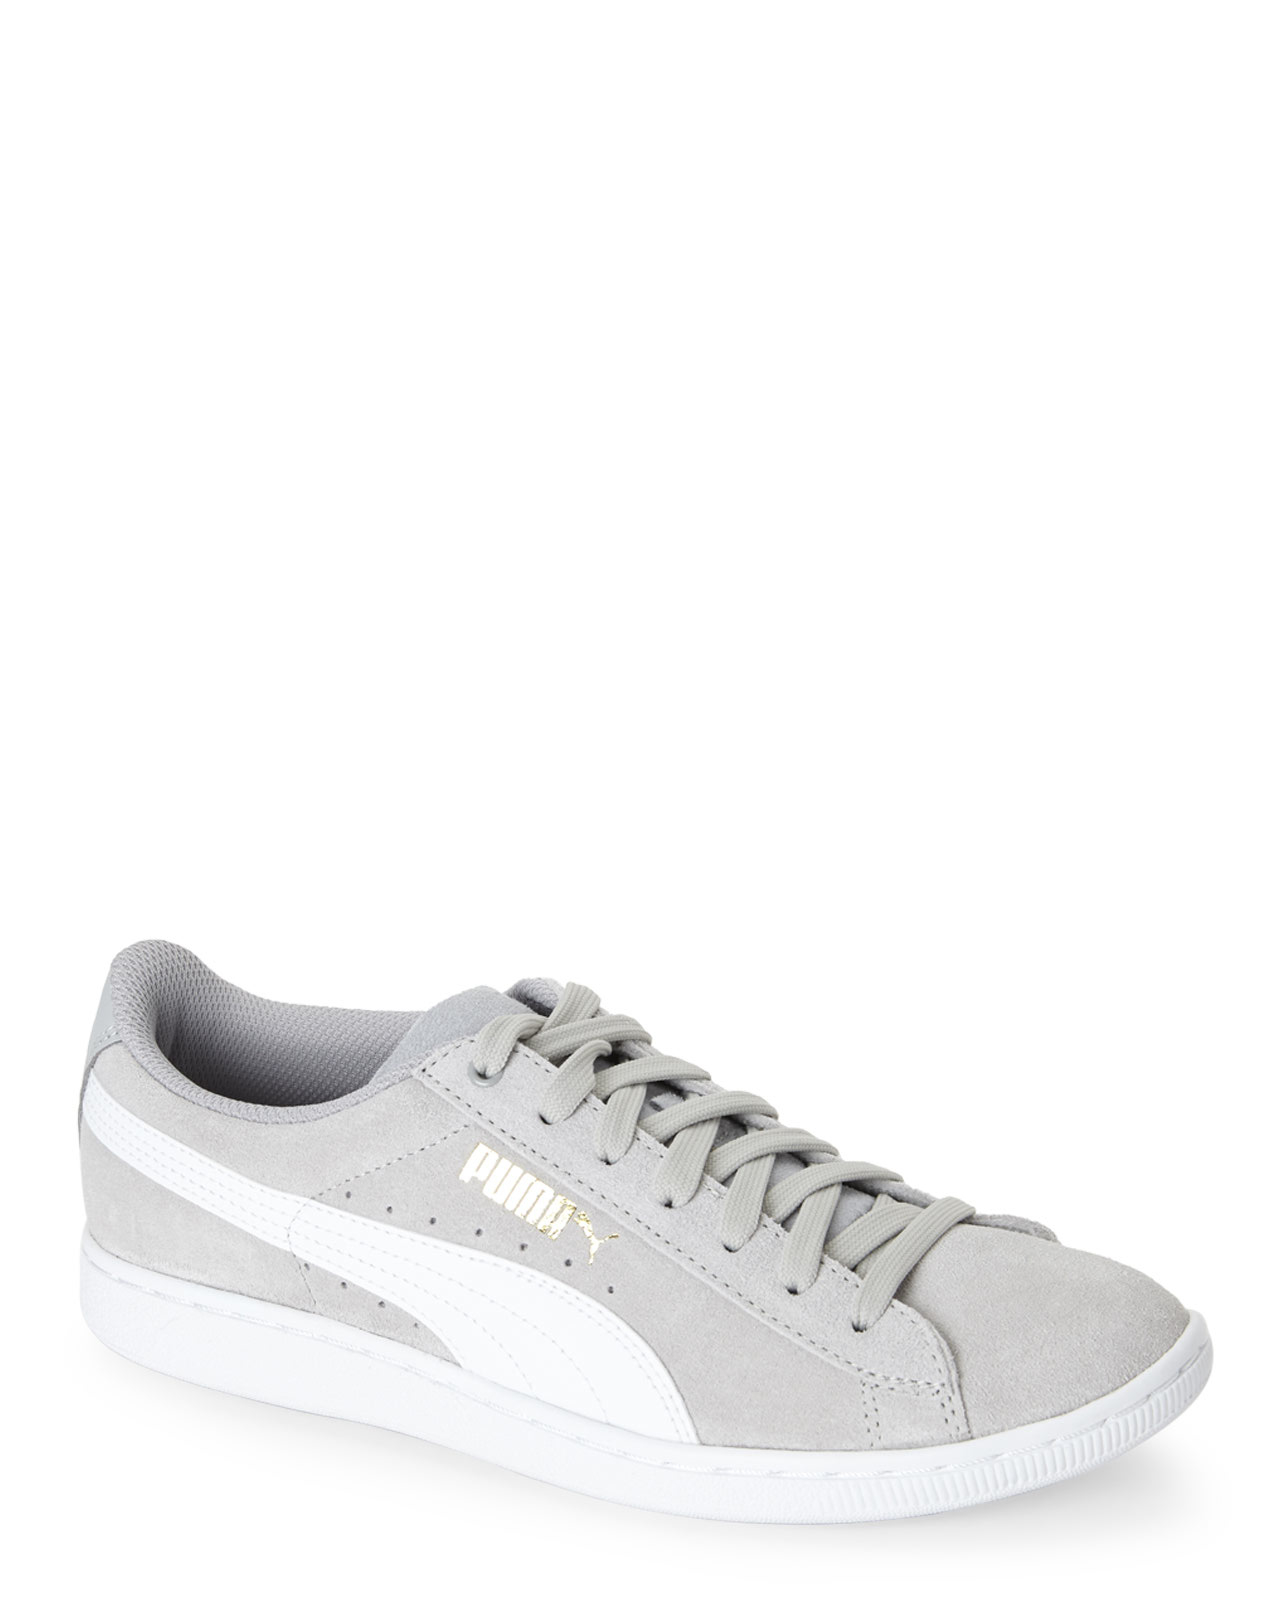 PUMA Grey \u0026 White Vikky Sneakers in 